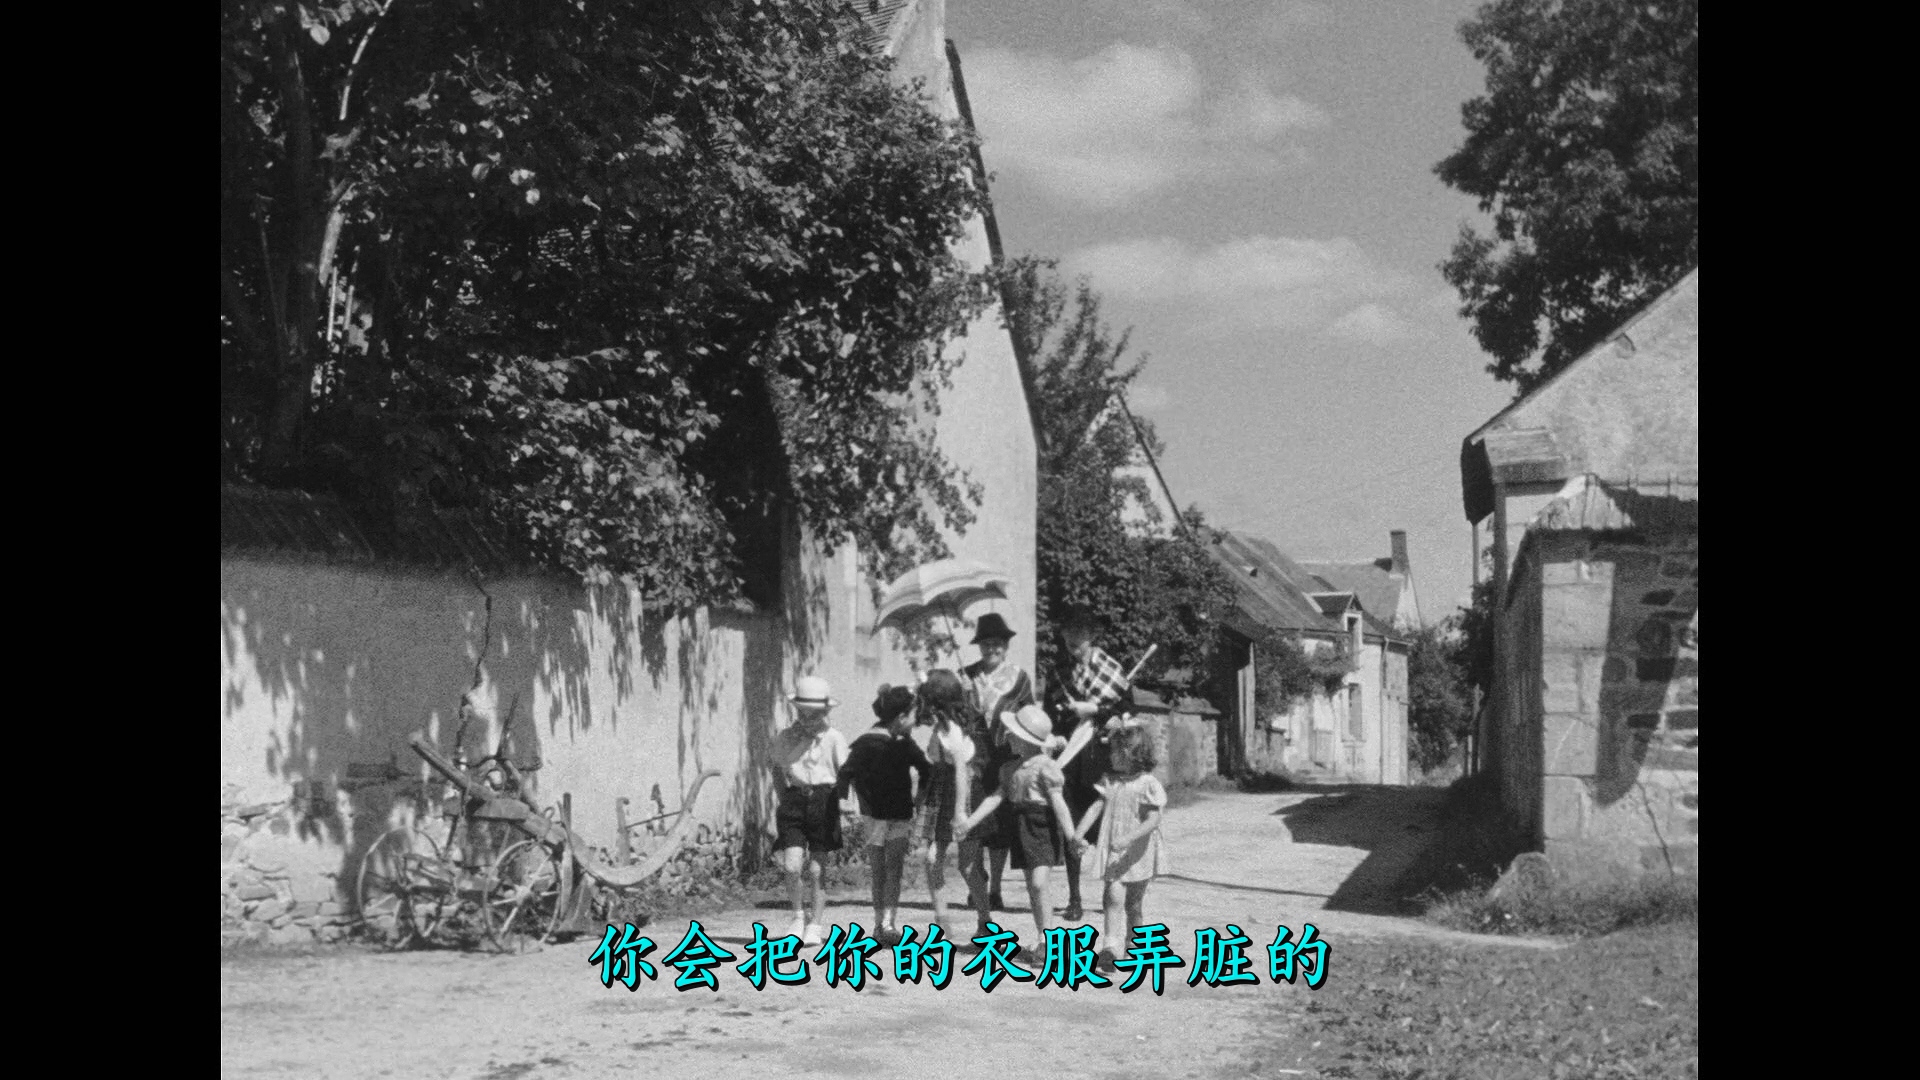 节日/Holiday[DiY简繁字幕].The.Village.Fair.1949.Criterion.Collection.Blu-ray.1080p.AVC.LPCM.1.0-DiY@TAG 46.55GB-4.jpg